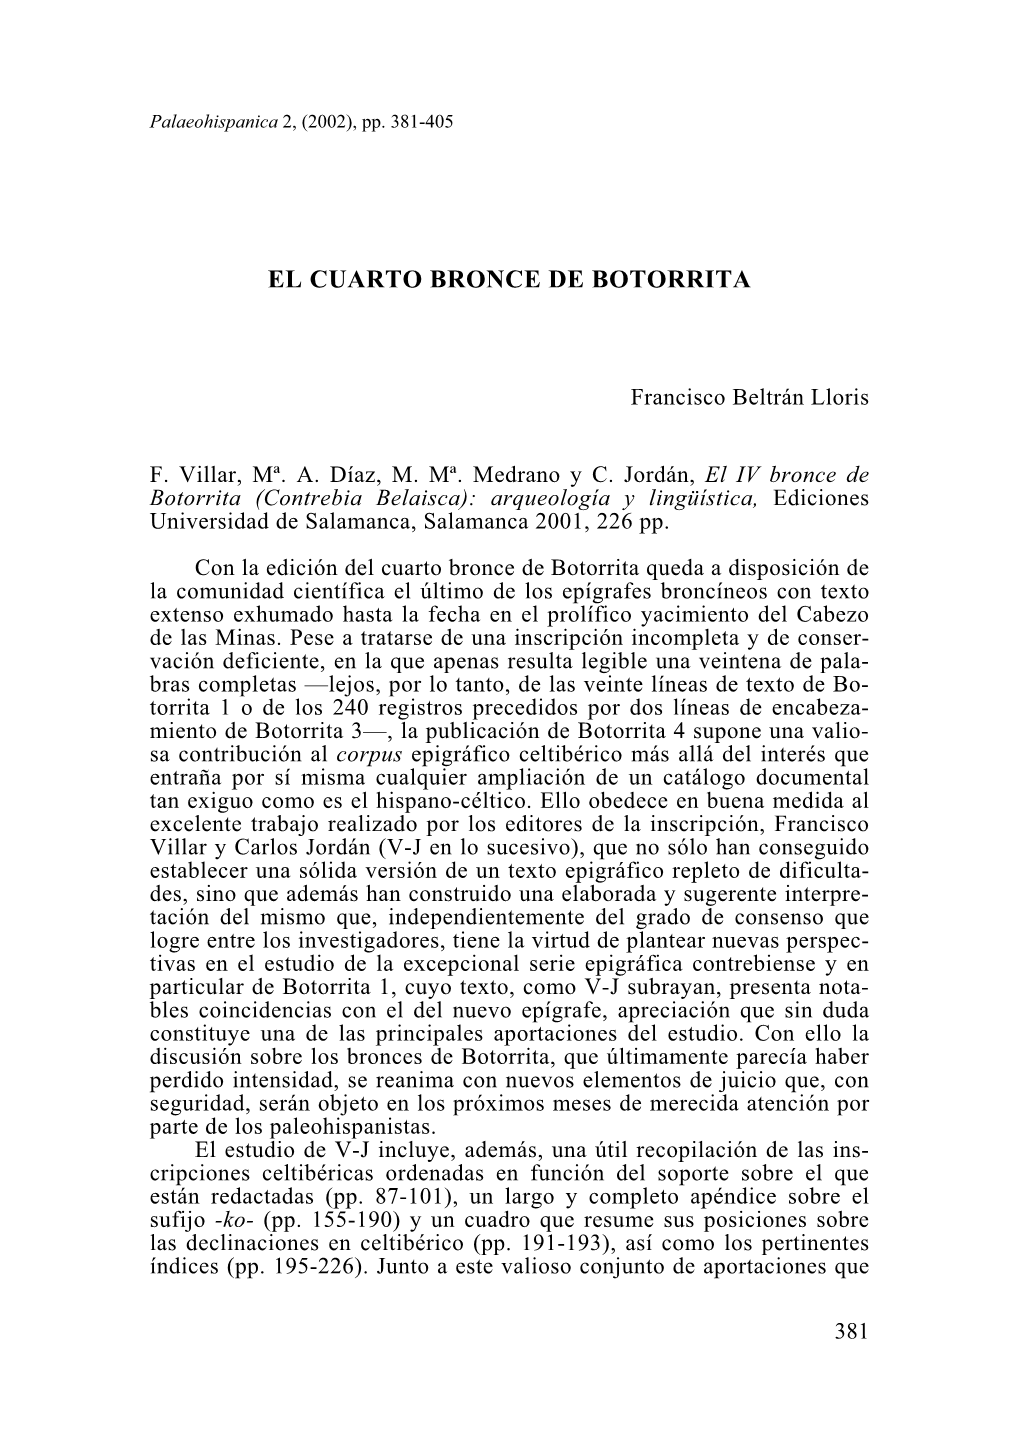 21. El Cuarto Bronce De Botorrita, Por Francisco Beltrán